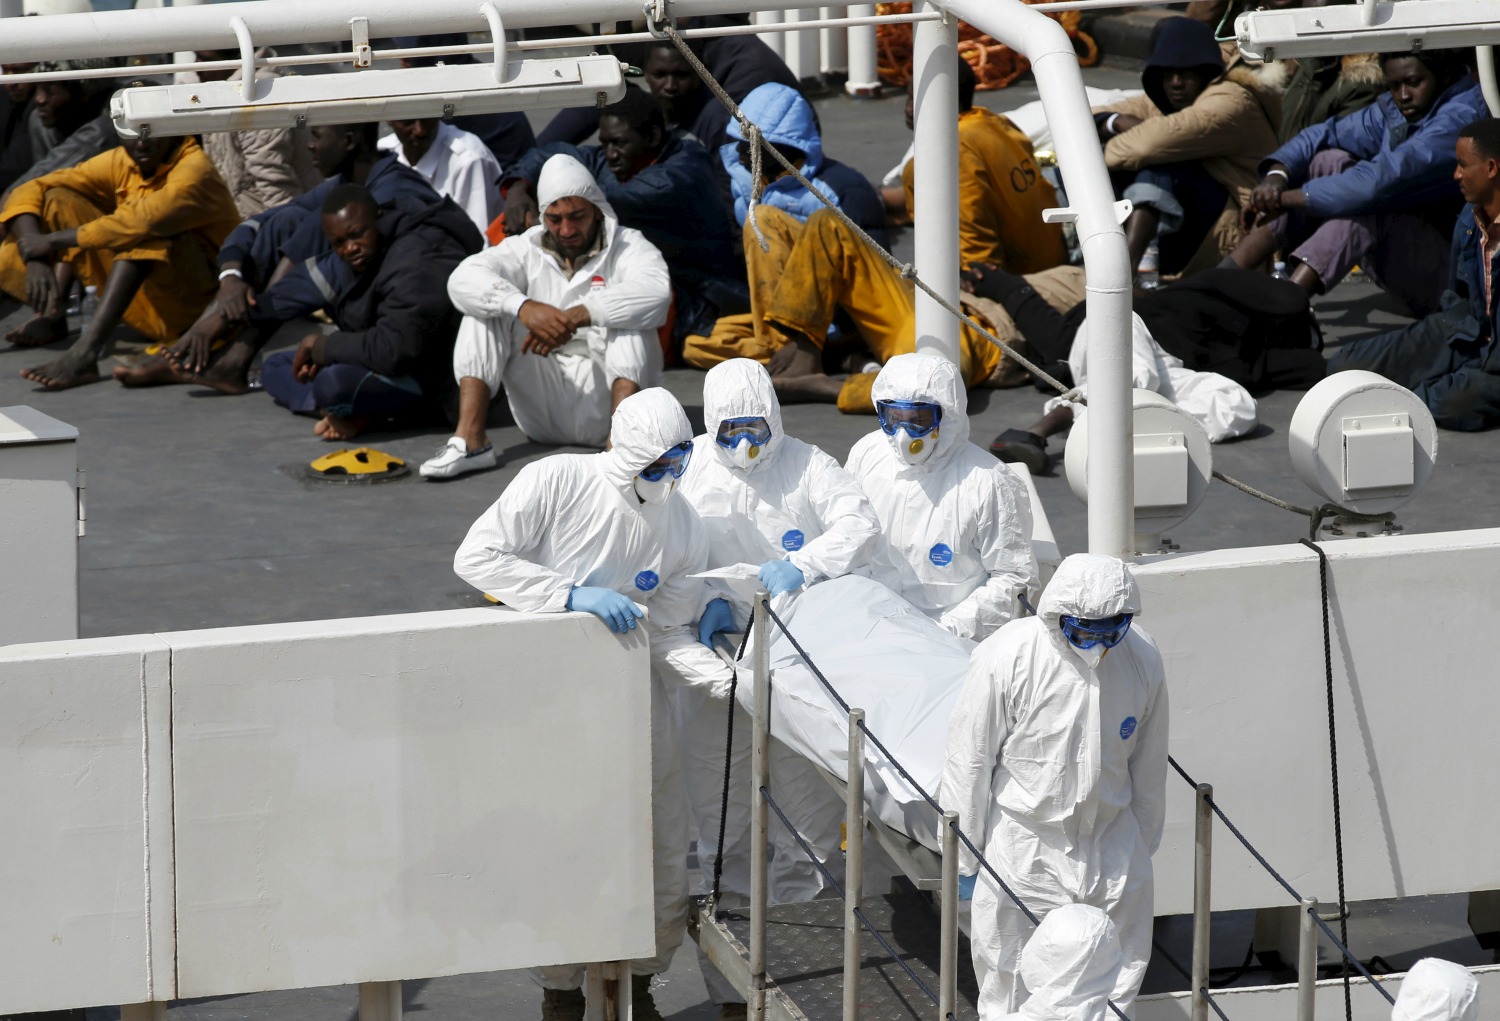 Condena ejemplar para los responsables del peor naufragio de emigrantes en el Mediterráneo